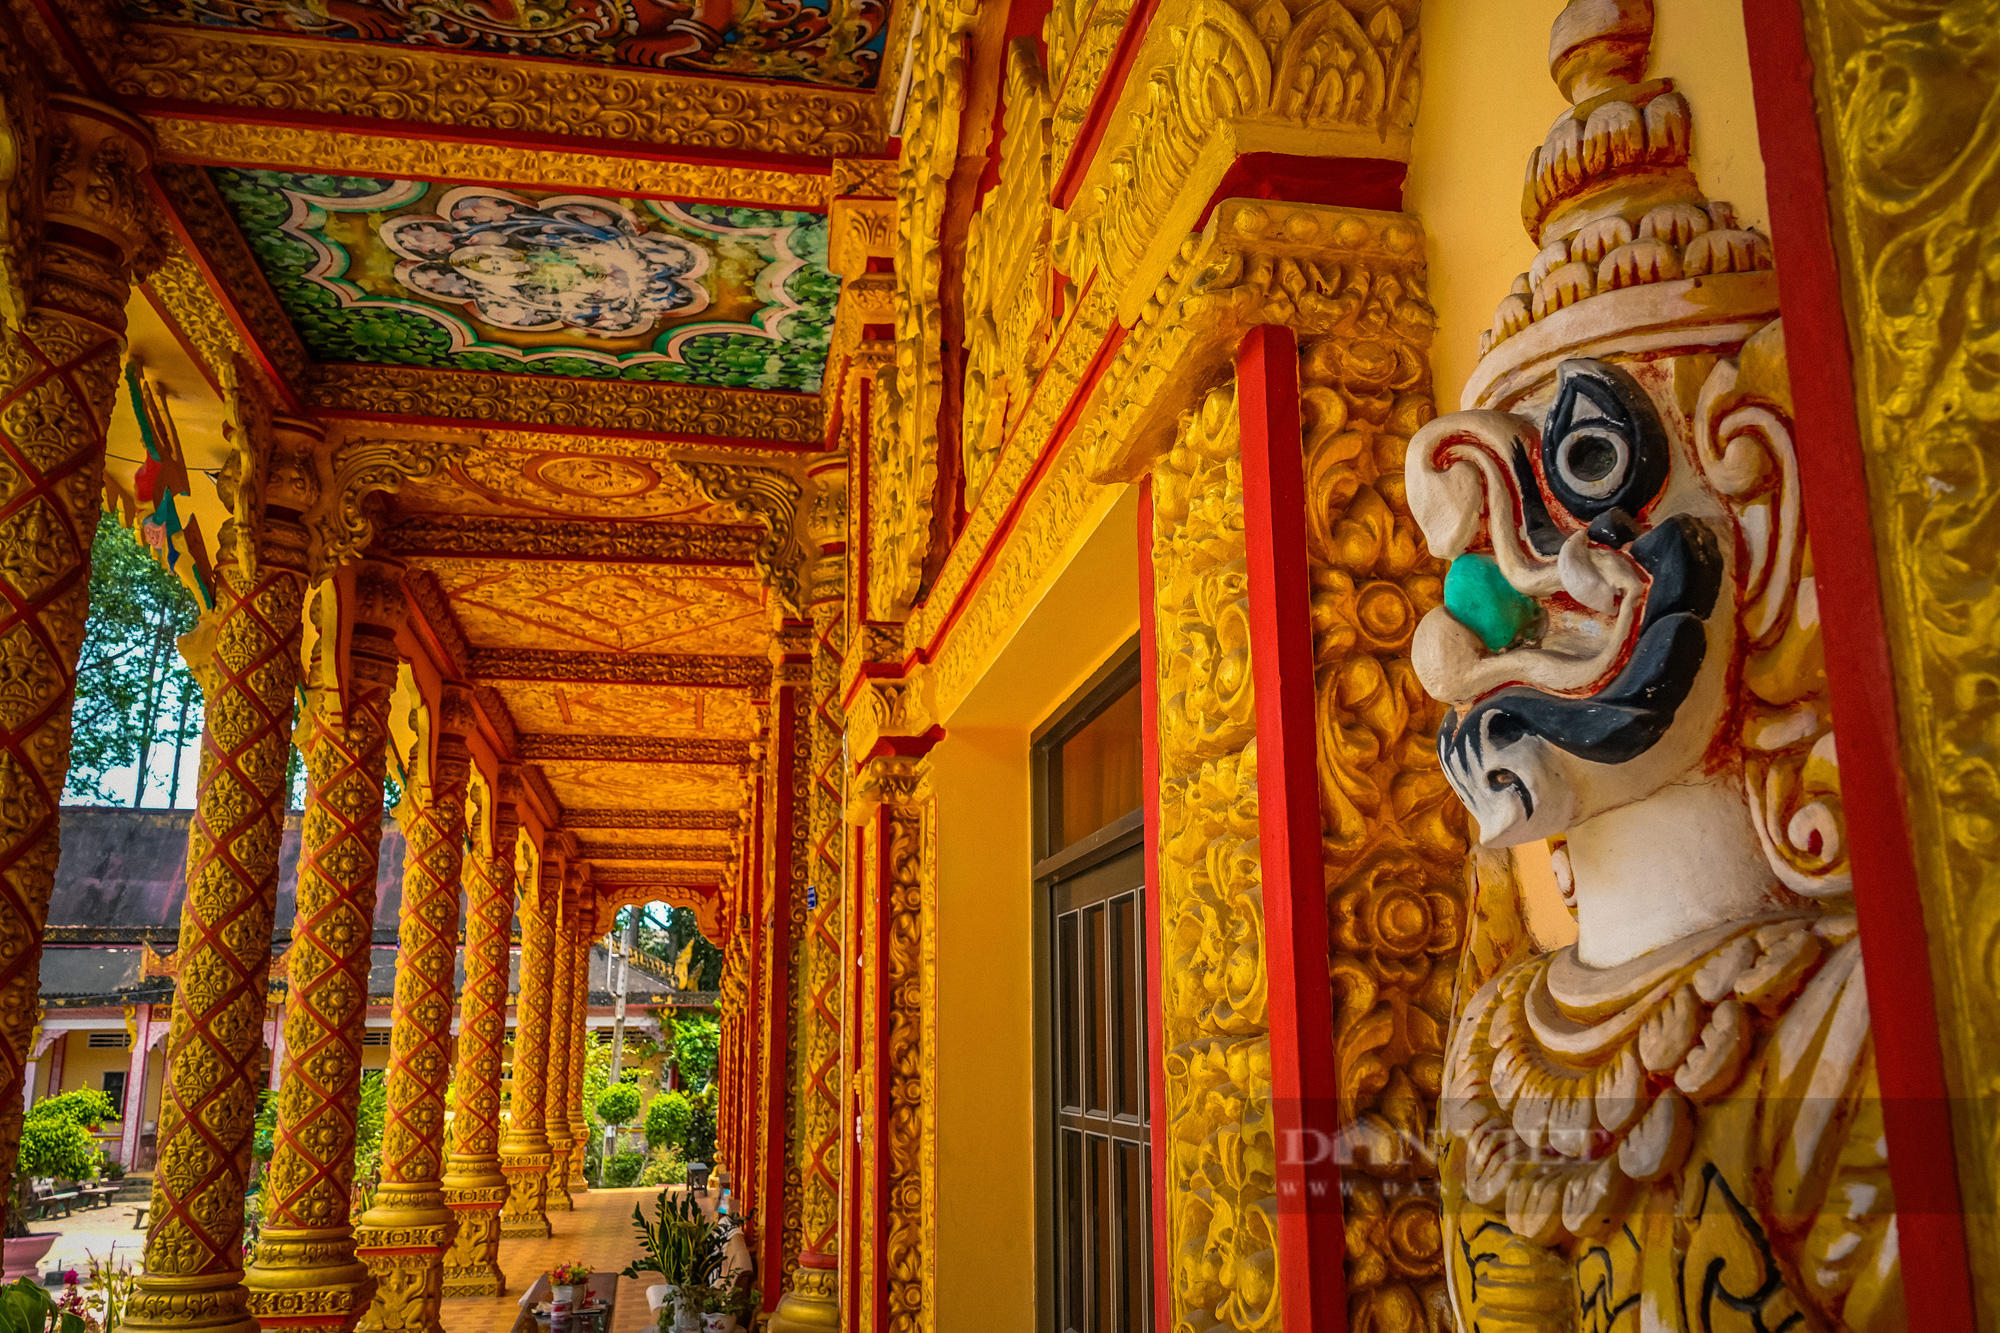 Ngôi chùa Khmer trăm năm tuổi với hàng trăm cây sao cổ thụ “độc” nhất Sóc Trăng - Ảnh 9.